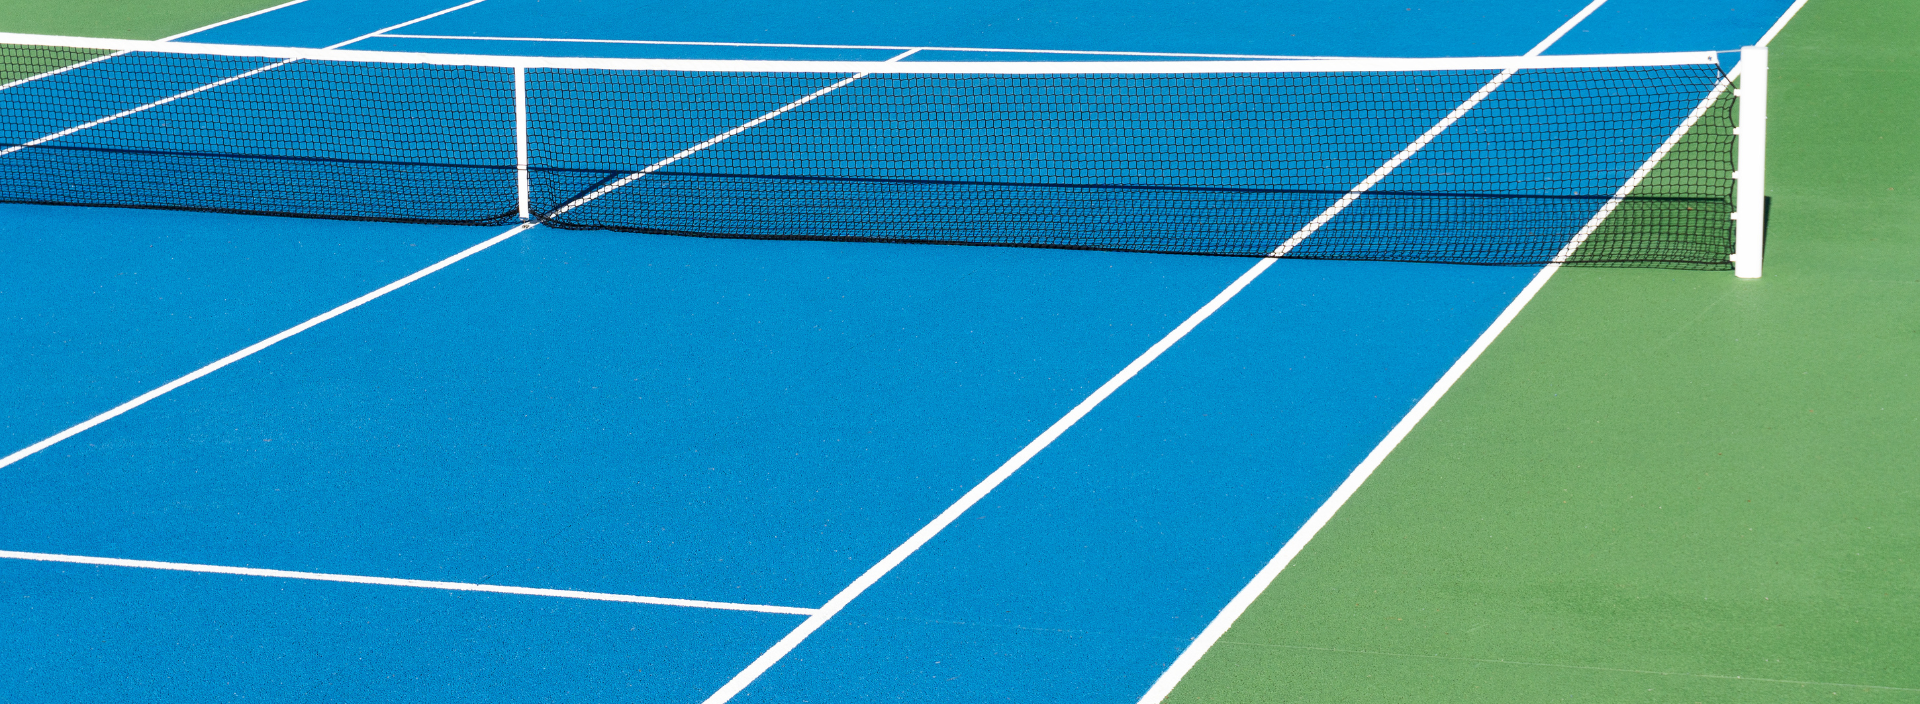 terrain de tennis court de tennis en terre battue